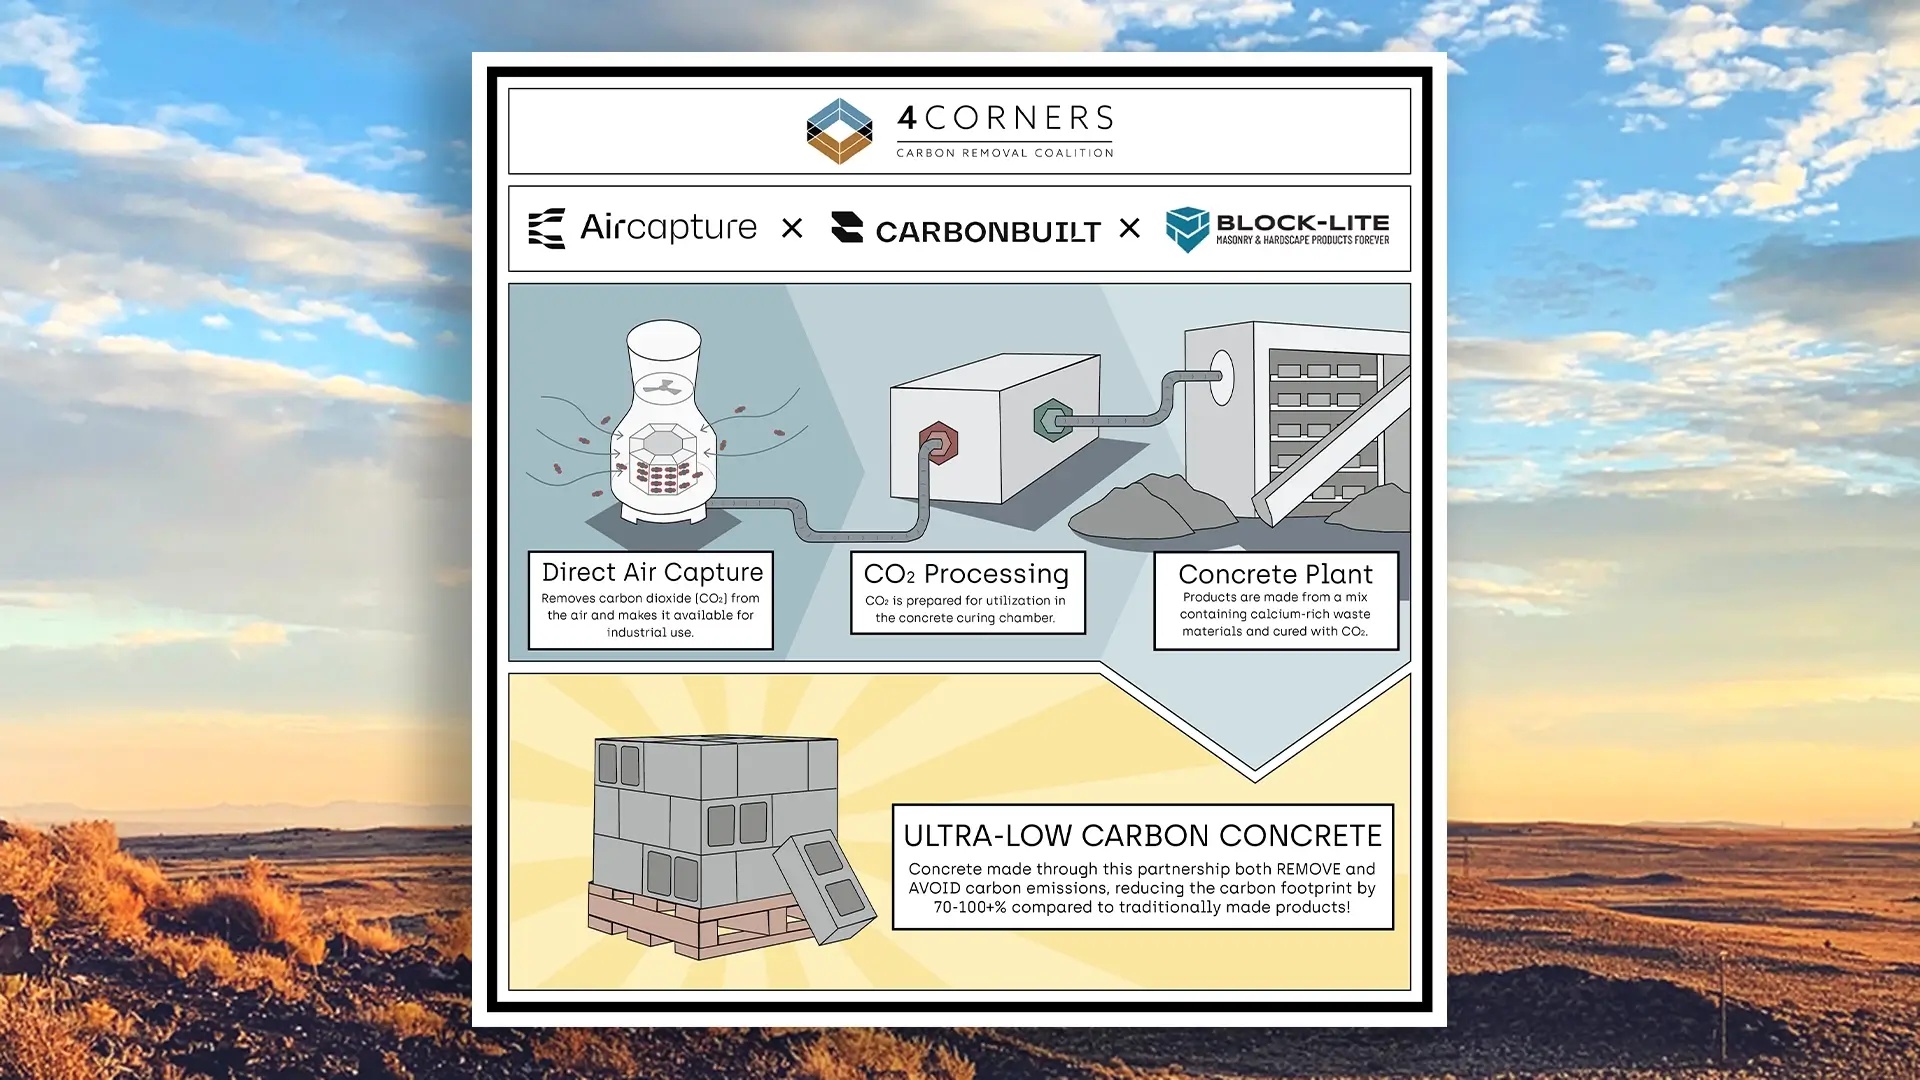 4Corners Carbon Coalition enables Direct Air Capture (DAC) for low carbon concrete production